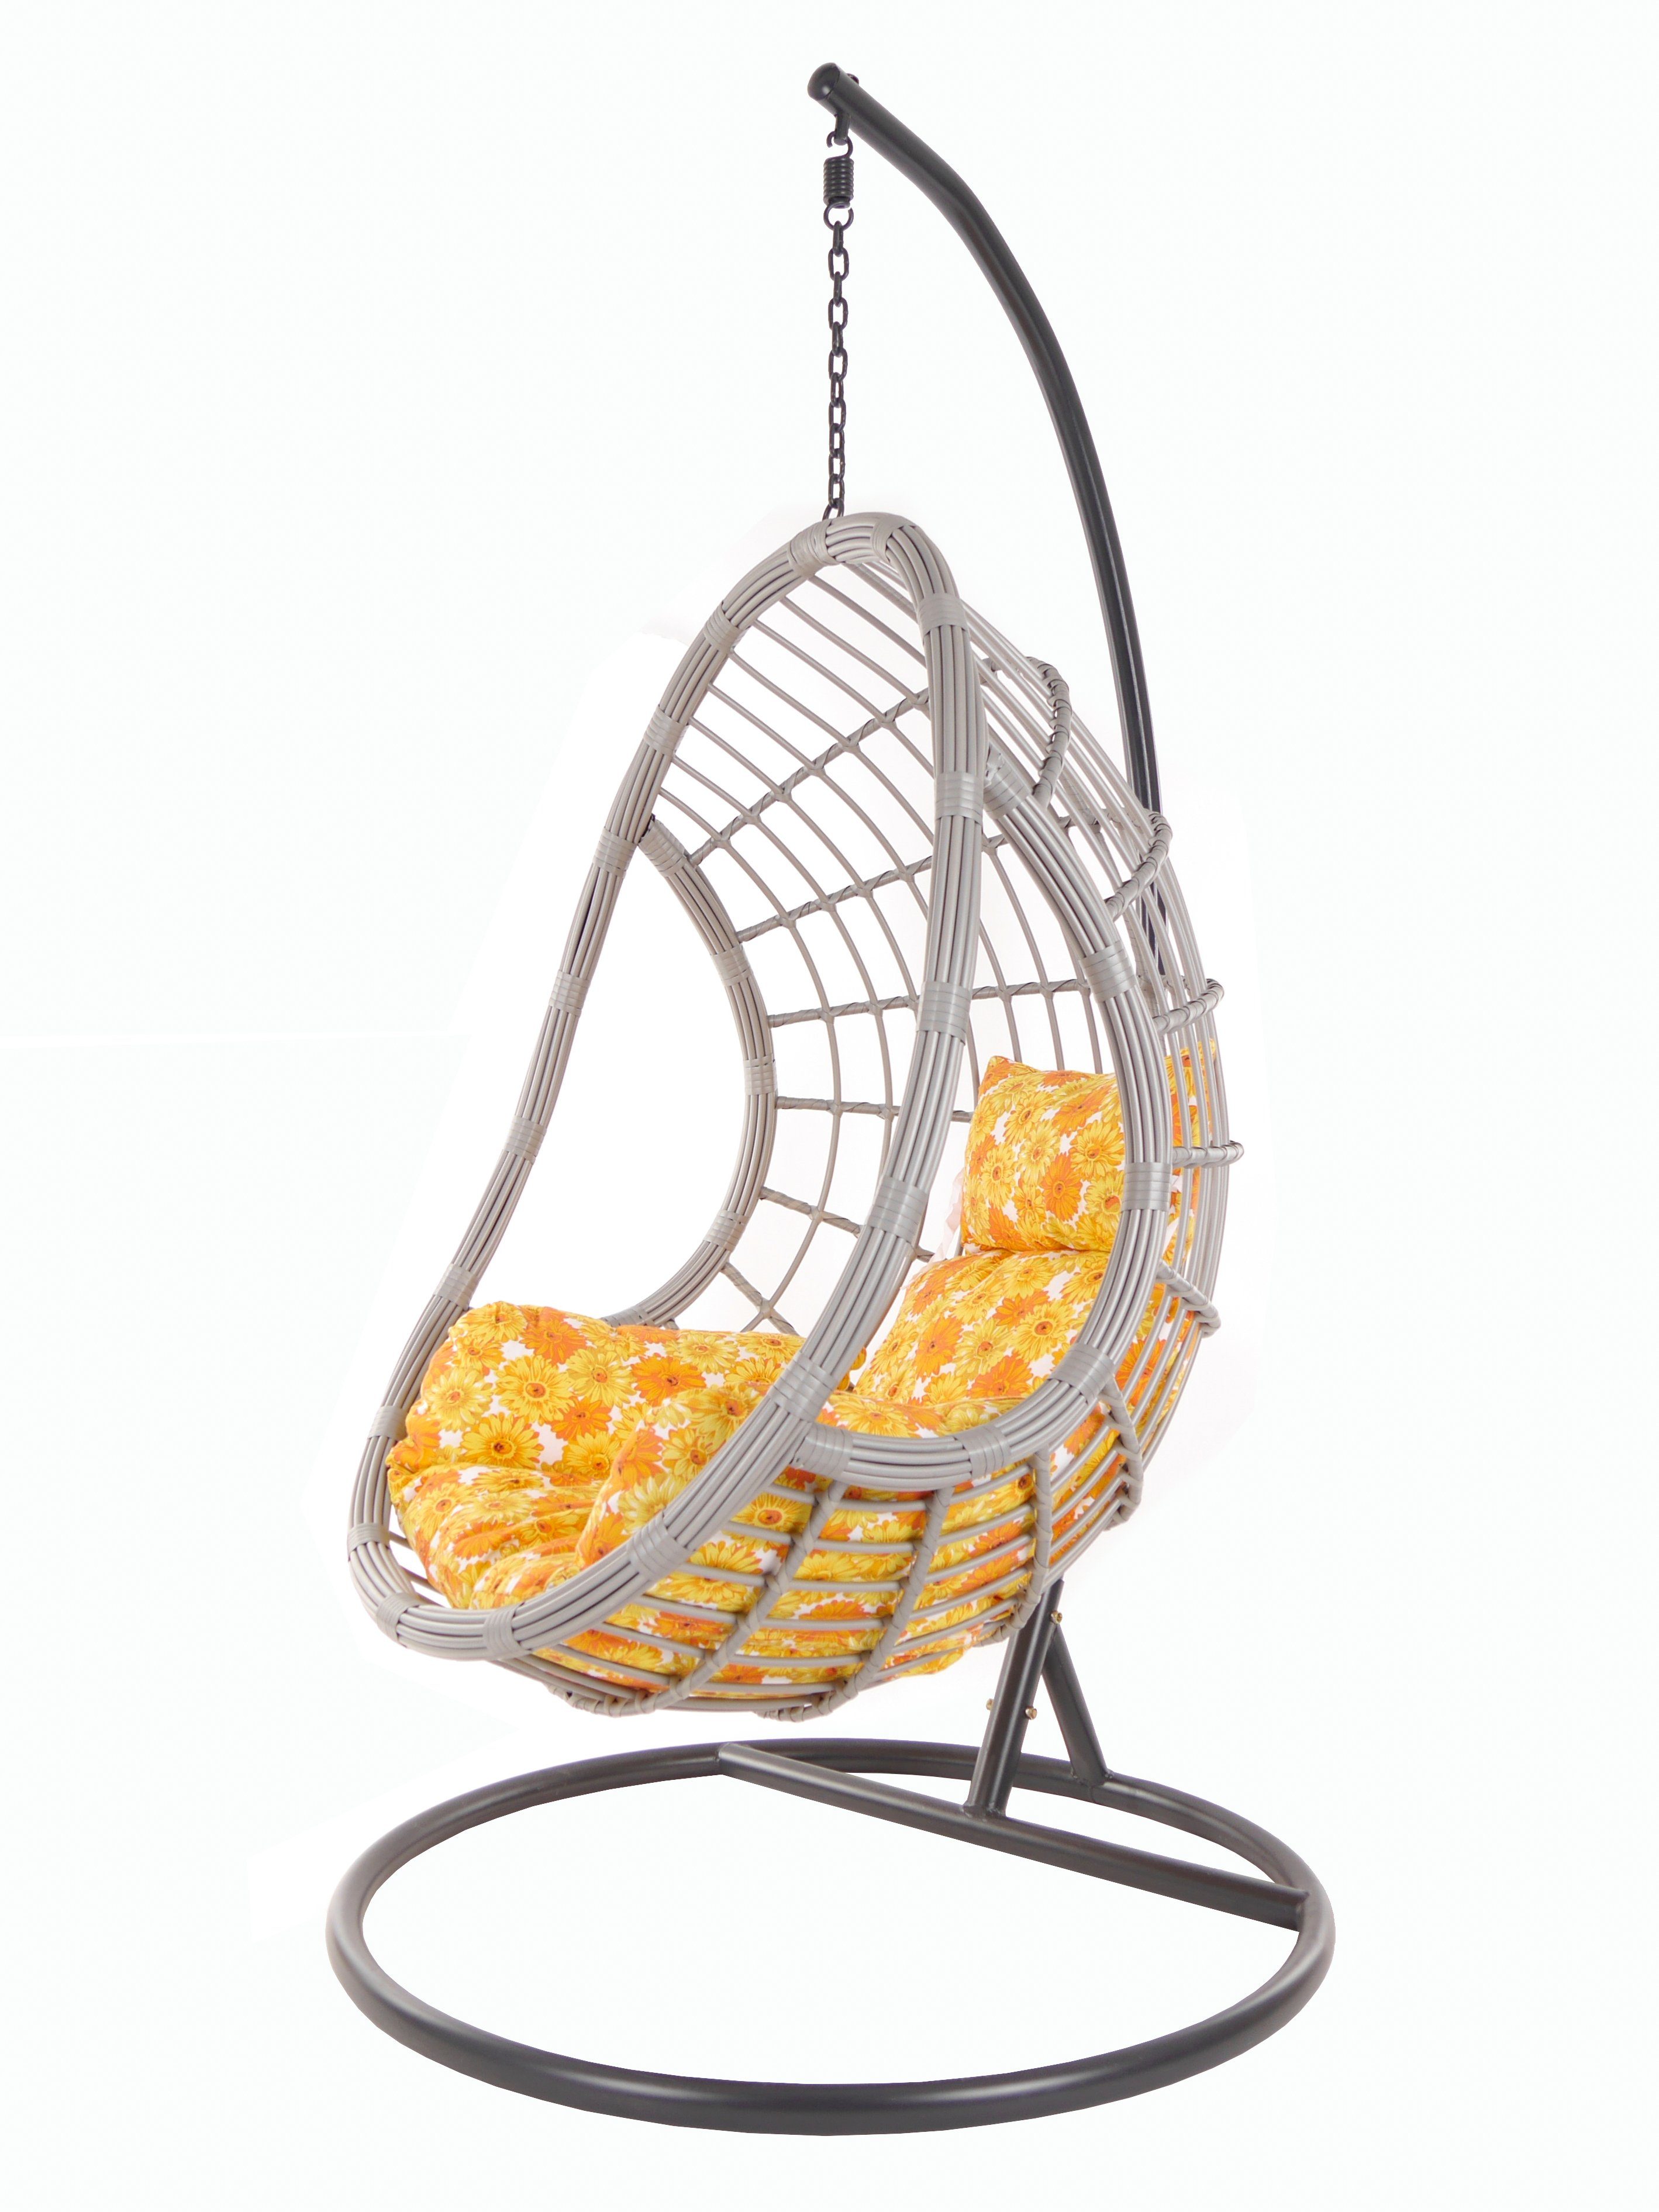 KIDEO Hängesessel PALMANOVA Loungemöbel, Chair, mit (2300 und sunflower) lightgrey, Gestell Swing sonnenblumen Kissen Hängesessel